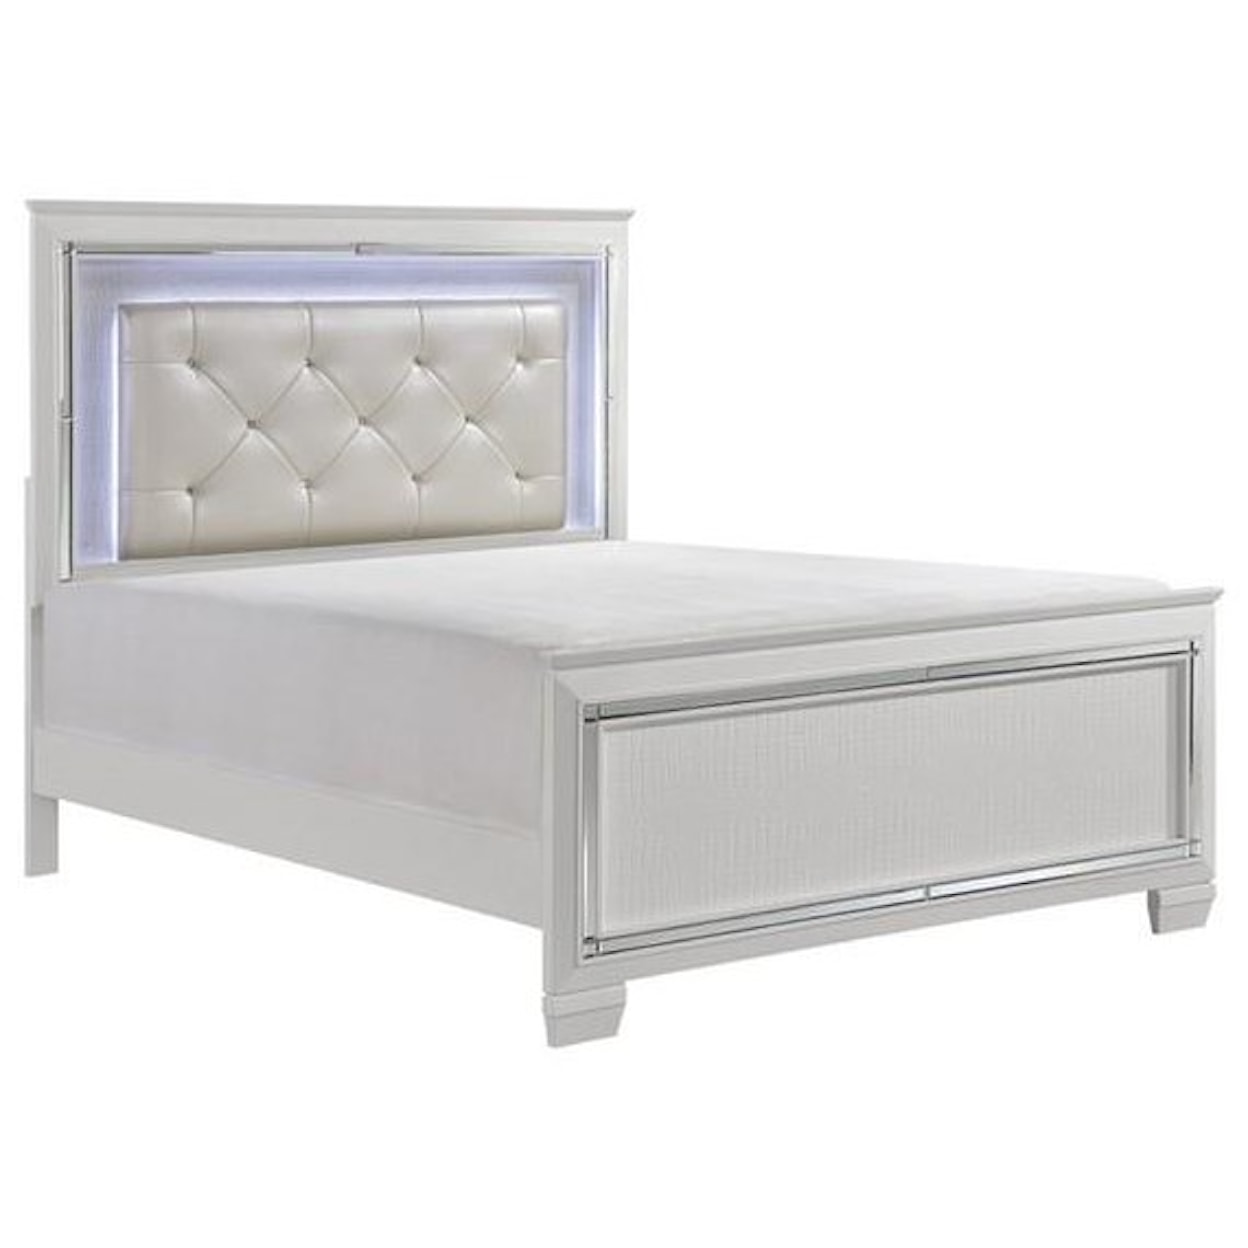 Homelegance Furniture Allura Full Panel Bed White